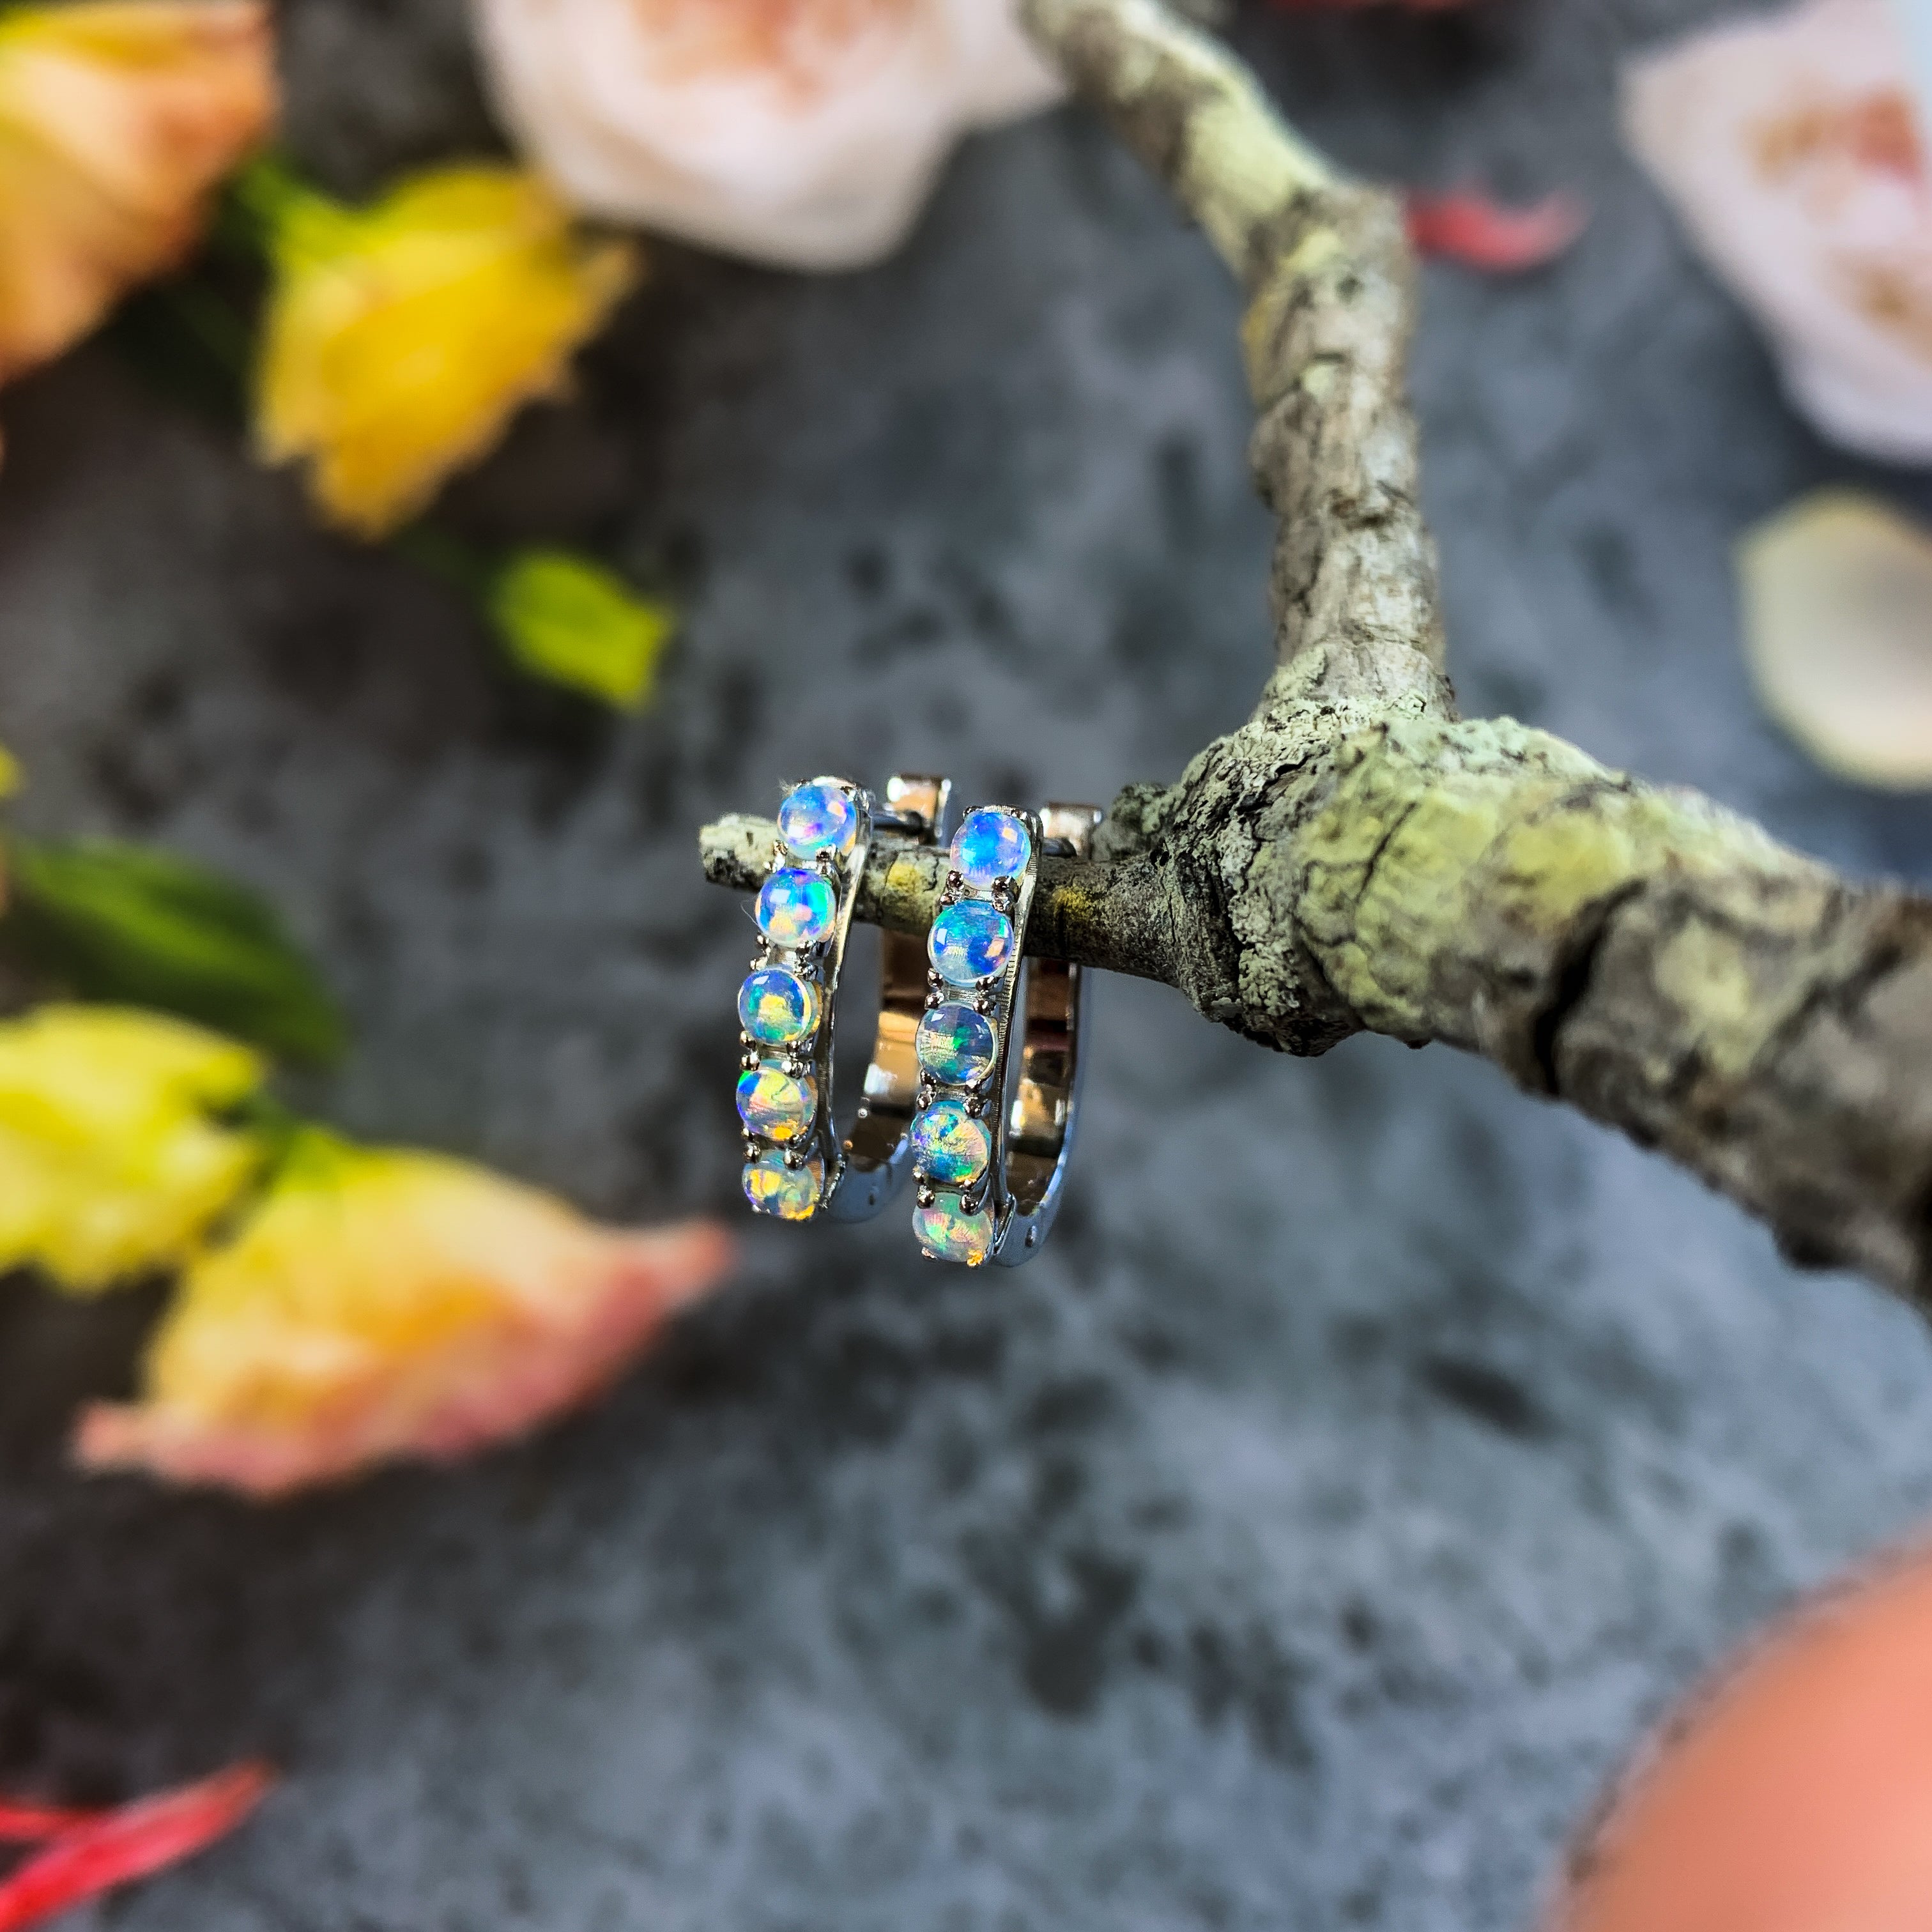 9kt White Gold pair of huggie Opal earrings - Masterpiece Jewellery Opal & Gems Sydney Australia | Online Shop